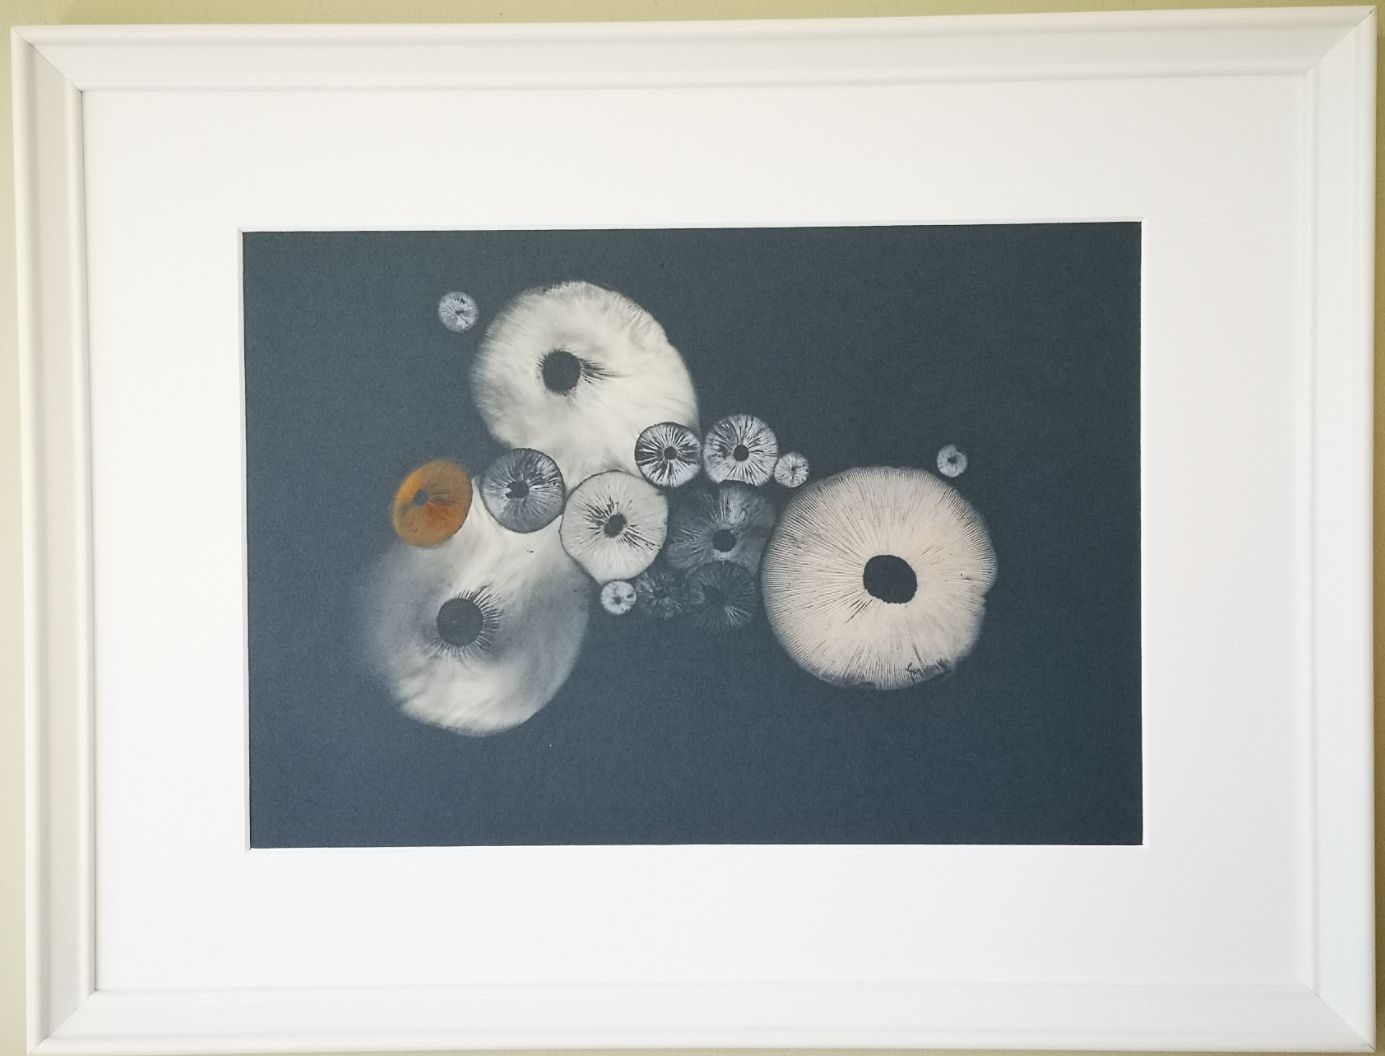 White mushroom art sporeprint on dark blue background in standard white frame